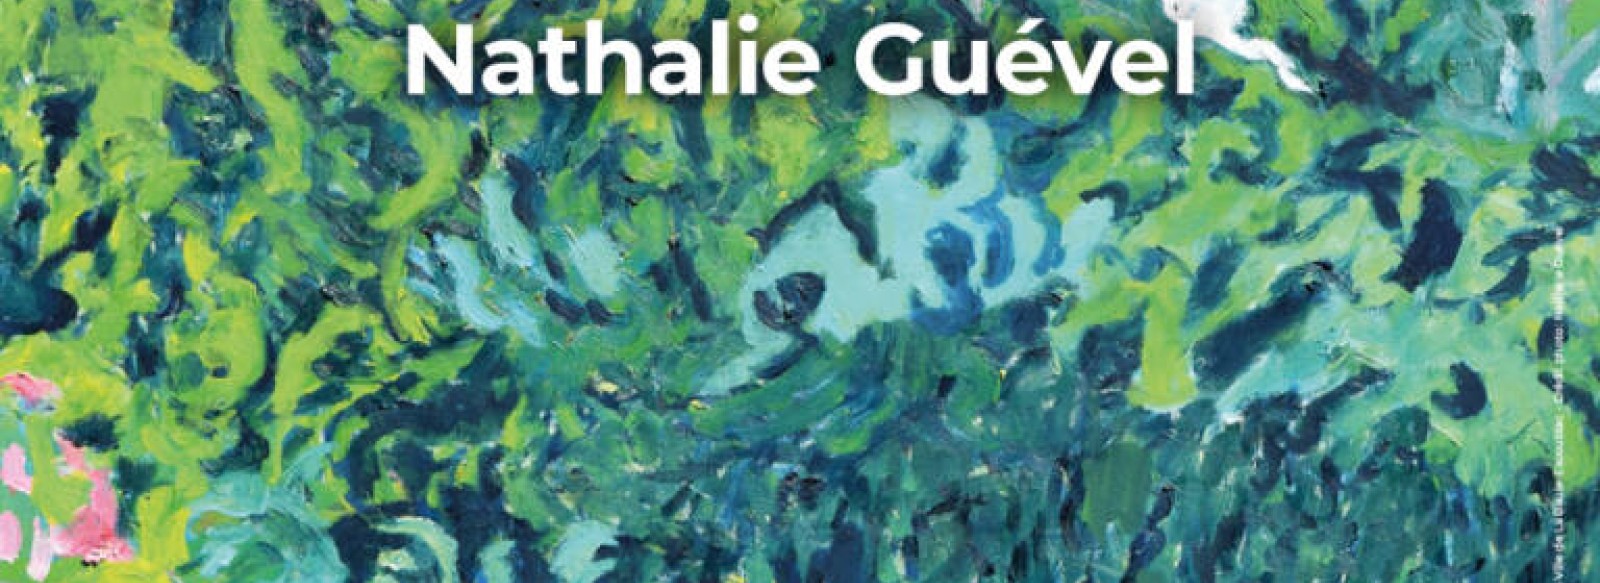 Exposition Nathalie Guevel - Les fenetres du dehors